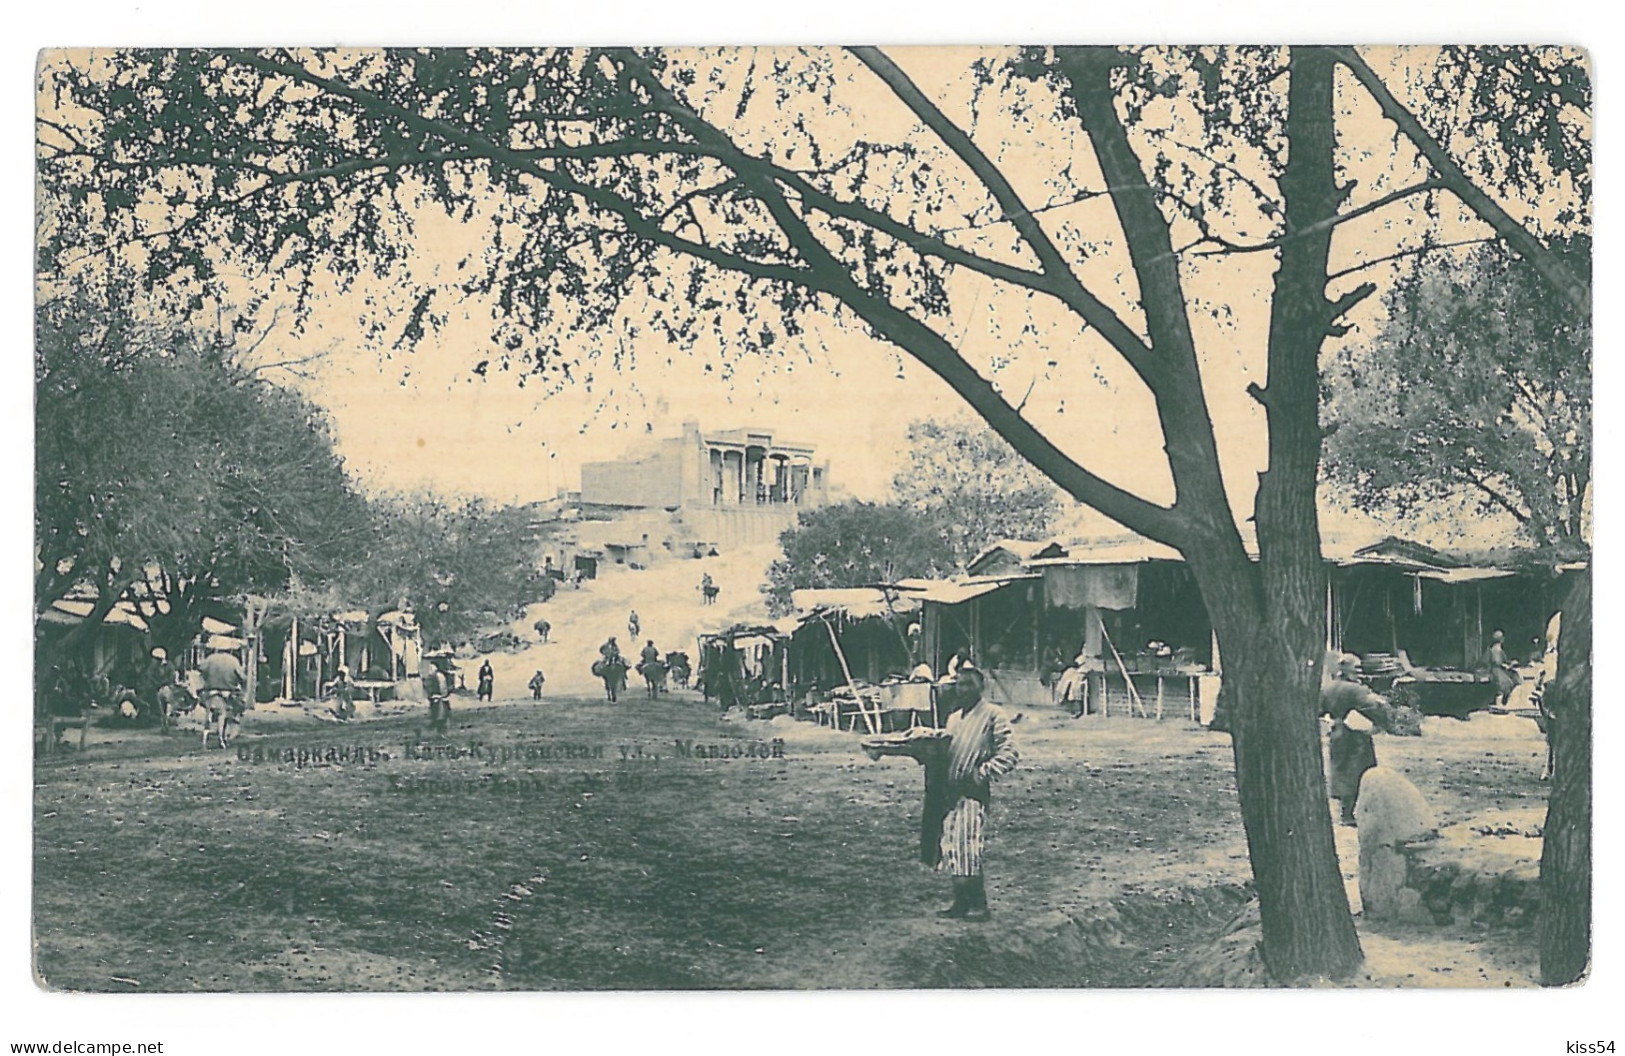 U 22 - 15533 SAMARKAND, Market, Uzbekistan - Old Postcard - Unused - 1914 - Ouzbékistan